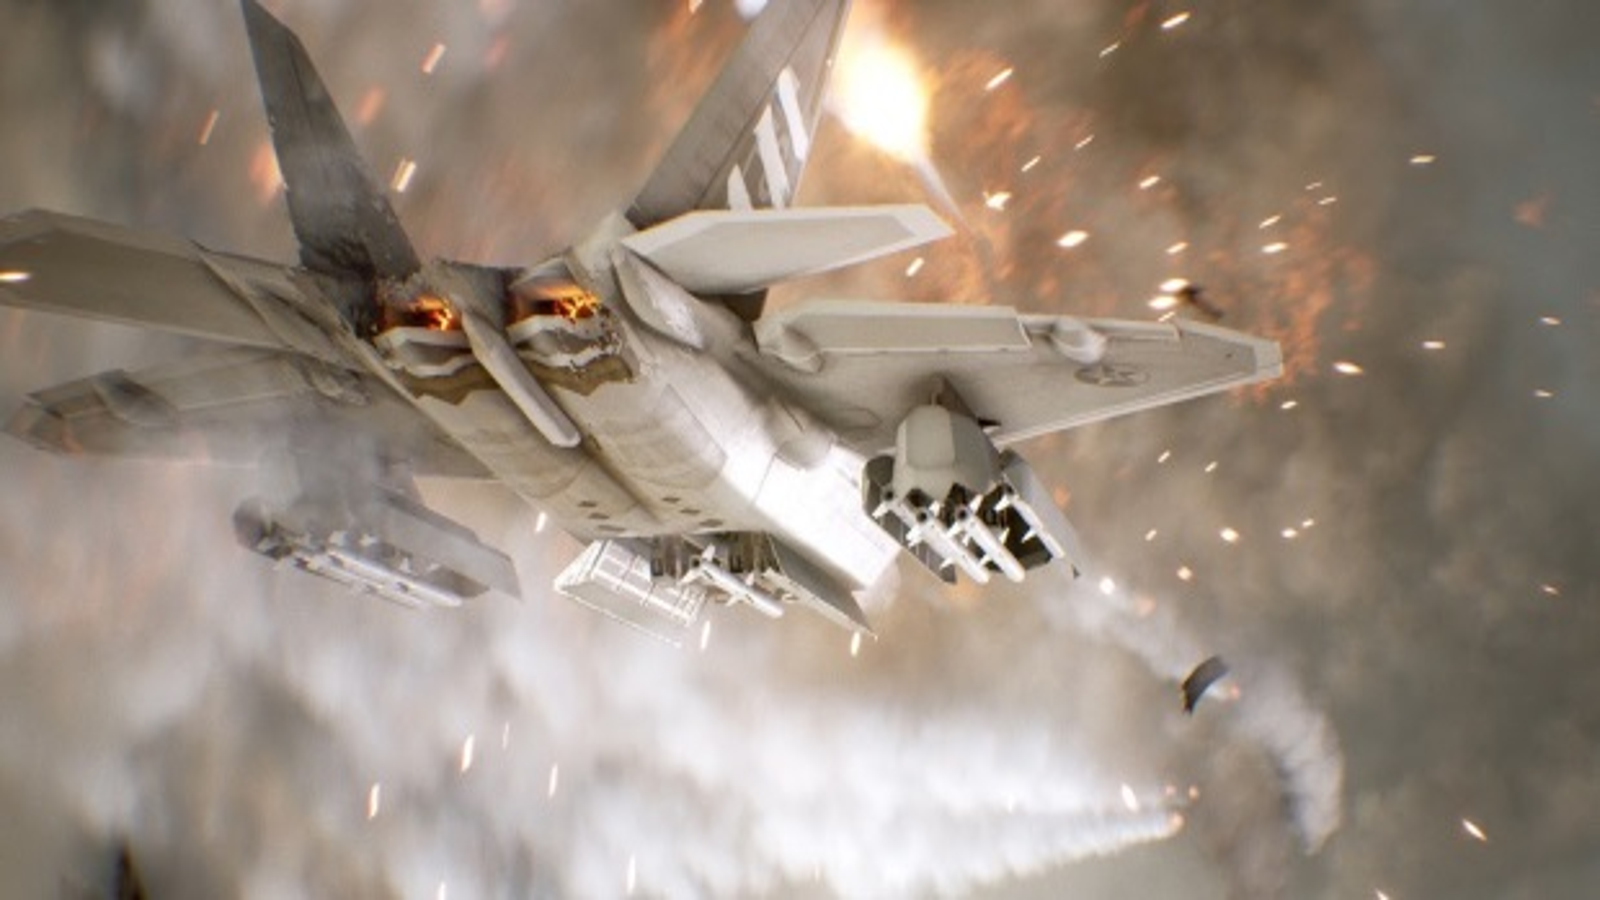 Ace Combat 7 & Project Wingman - Review 